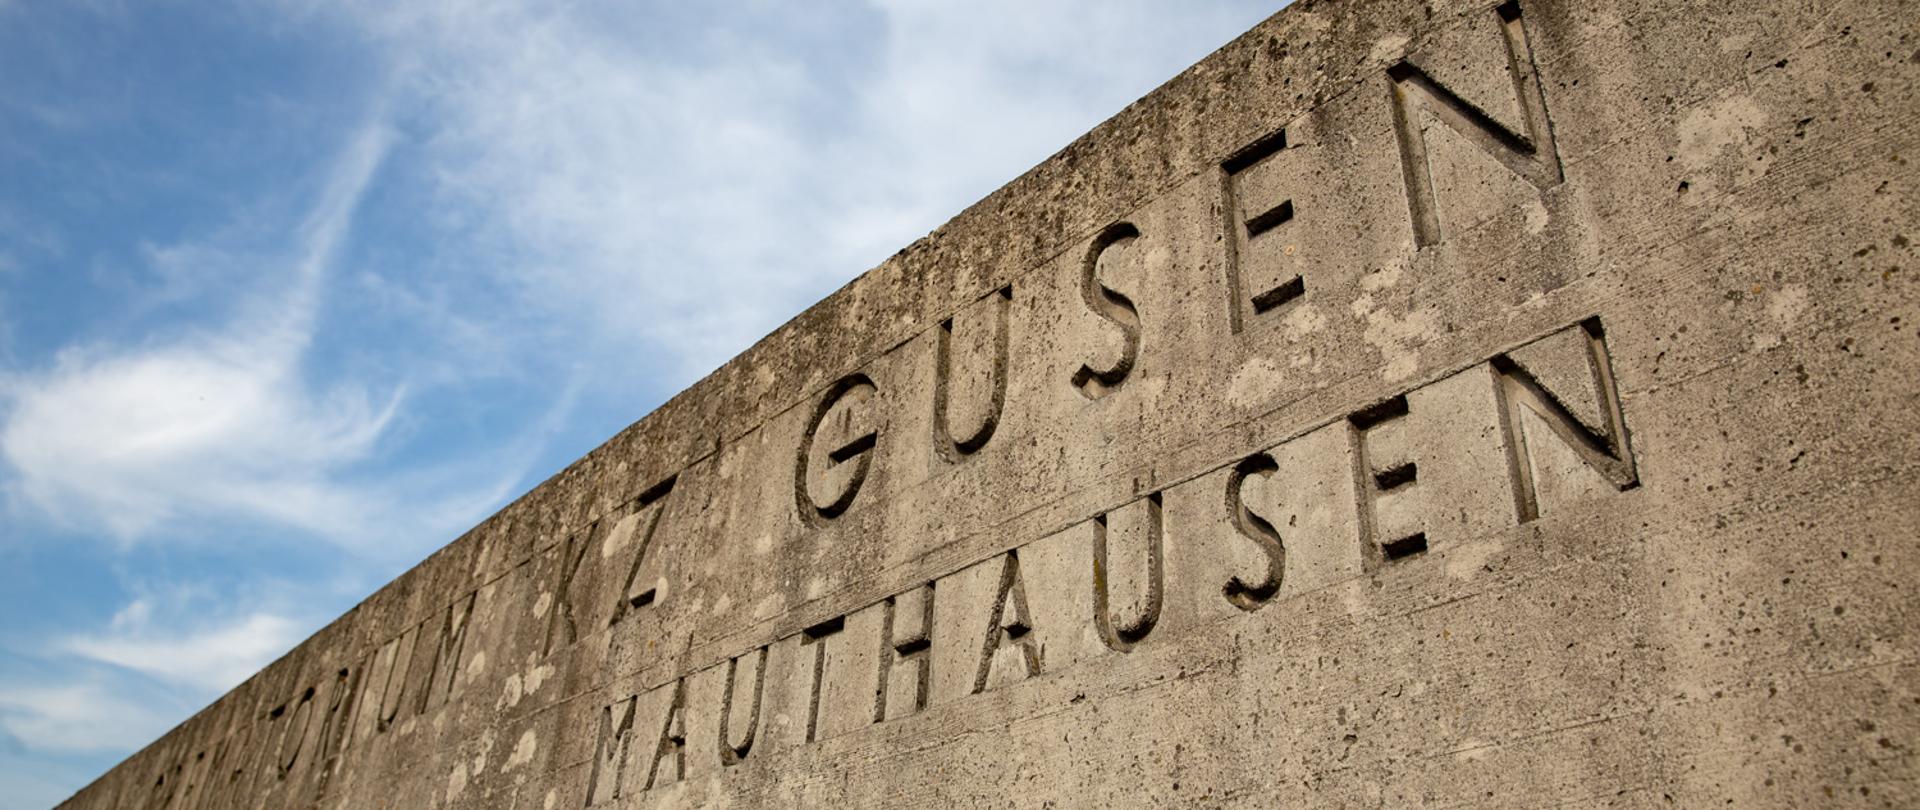 5 maja 1945 roku o godzinie 17 oddziały amerykańskie przekroczyły bramę niemieckiego obozu koncentracyjnego Gusen. Tego samego dnia wyzwolony został główny obóz Mauthausen, a na przełomie kwietnia i maja pozostałe filie systemu obozów Mauthausen-Gusen.